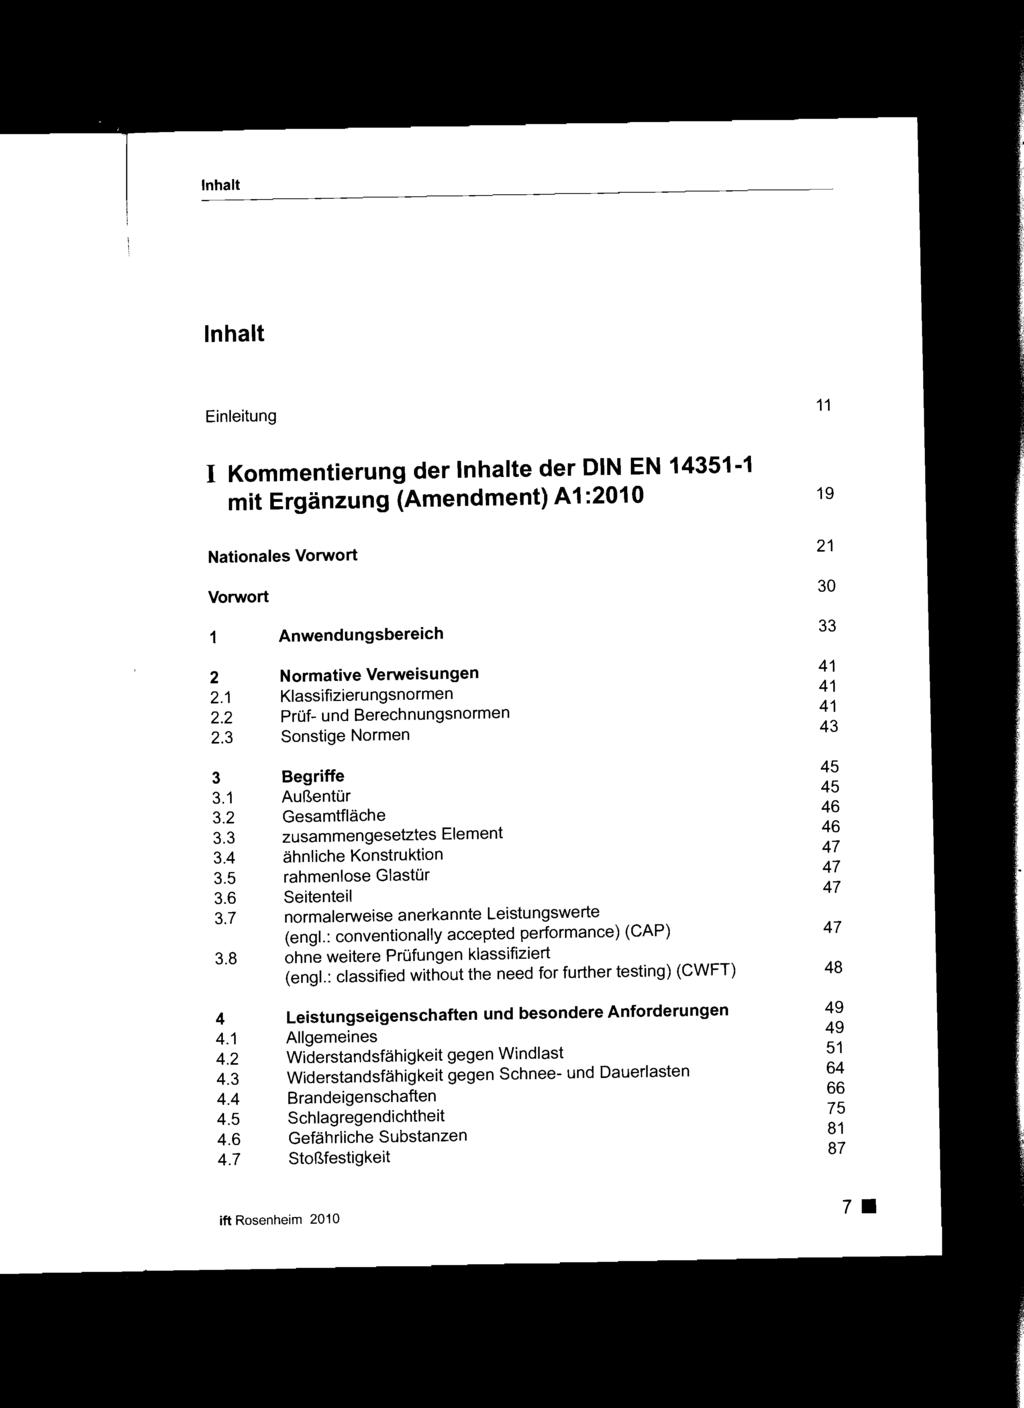 Inhalt Einleitung 11 I Kommentierung der Inhalte der DIN EN 14351-1 mit Ergänzung (Amendment) A1 :2010 19 Nationales Vorwort 21 Vorwort 30 1 2 2.1 2.2 2.3 3 3.1 3.2 3.3 3.4 3.5 3.6 3.7 3.